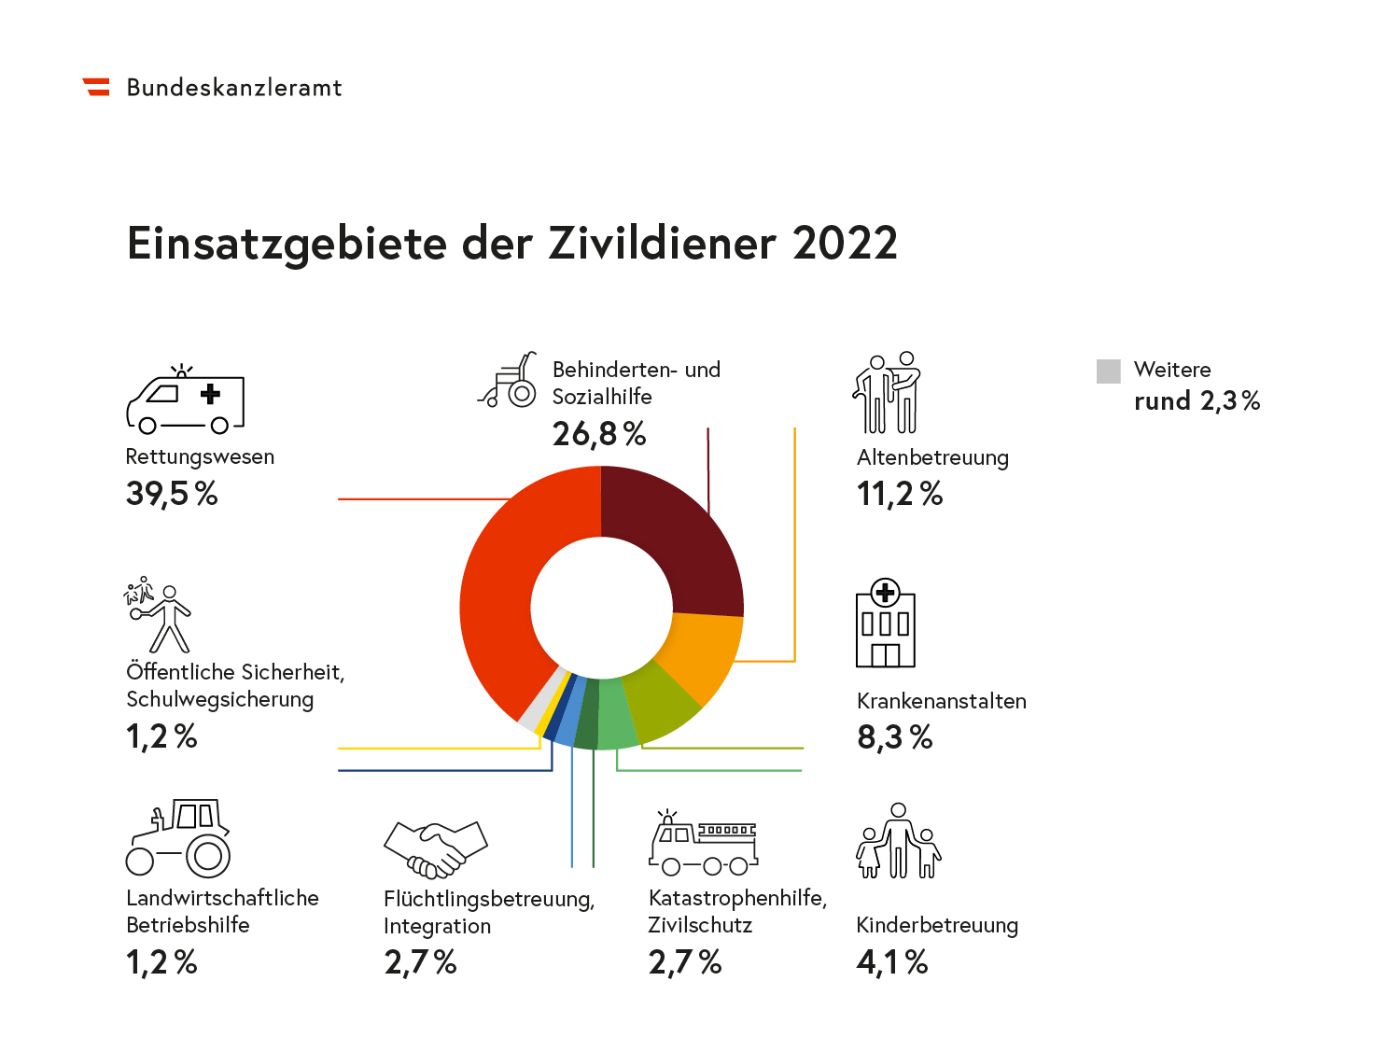 Die Grafik zeigt, wie viele Zivildiener im Jahr 2022 aufgeschlüsselt nach Einsatzgebieten zugewiesen wurden.